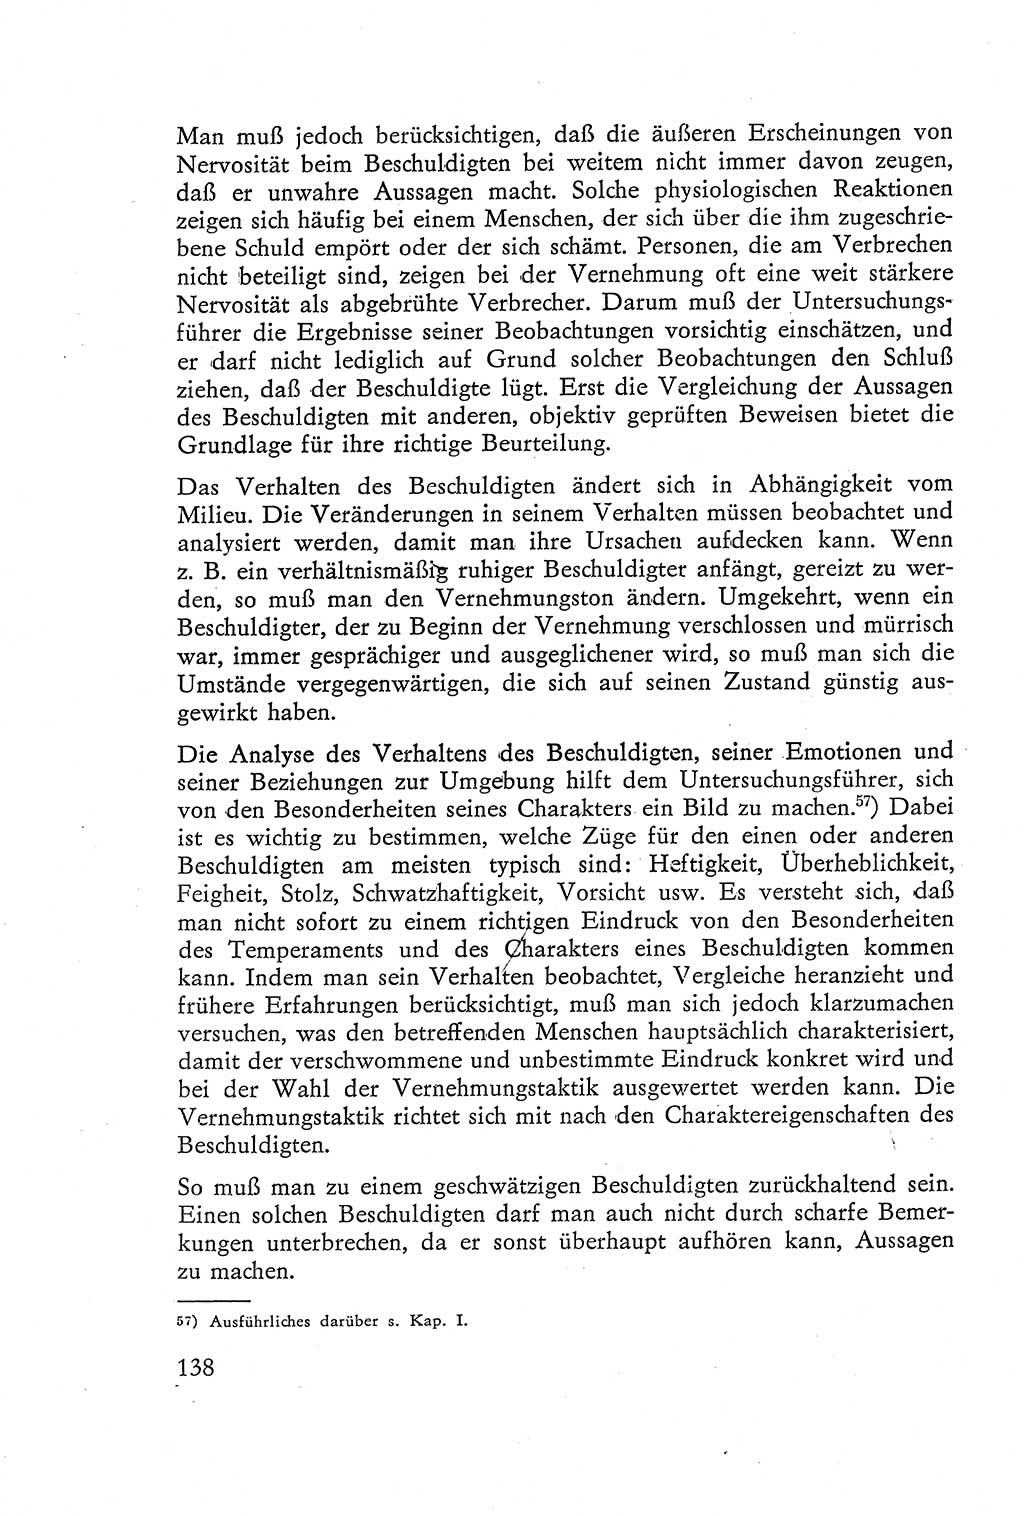 Die Vernehmung [Deutsche Demokratische Republik (DDR)] 1960, Seite 138 (Vern. DDR 1960, S. 138)